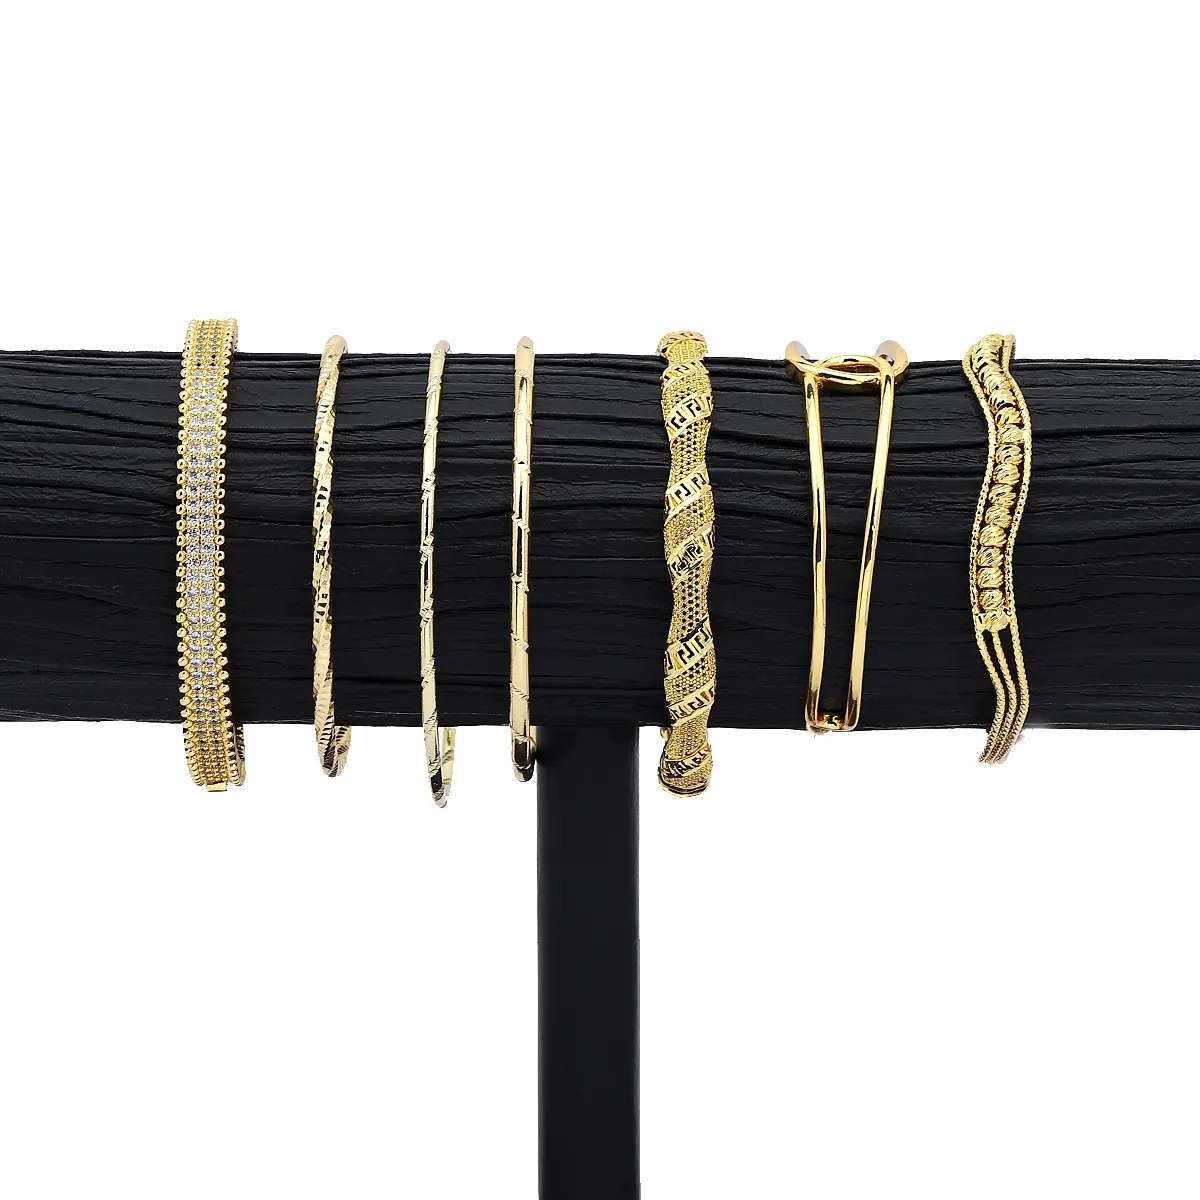 Jxx vente chaude 24K plaqué or cuivre femmes bracelets dubaï arabie saoudite mariée bijoux creux géométrique bracelets cadeau en gros